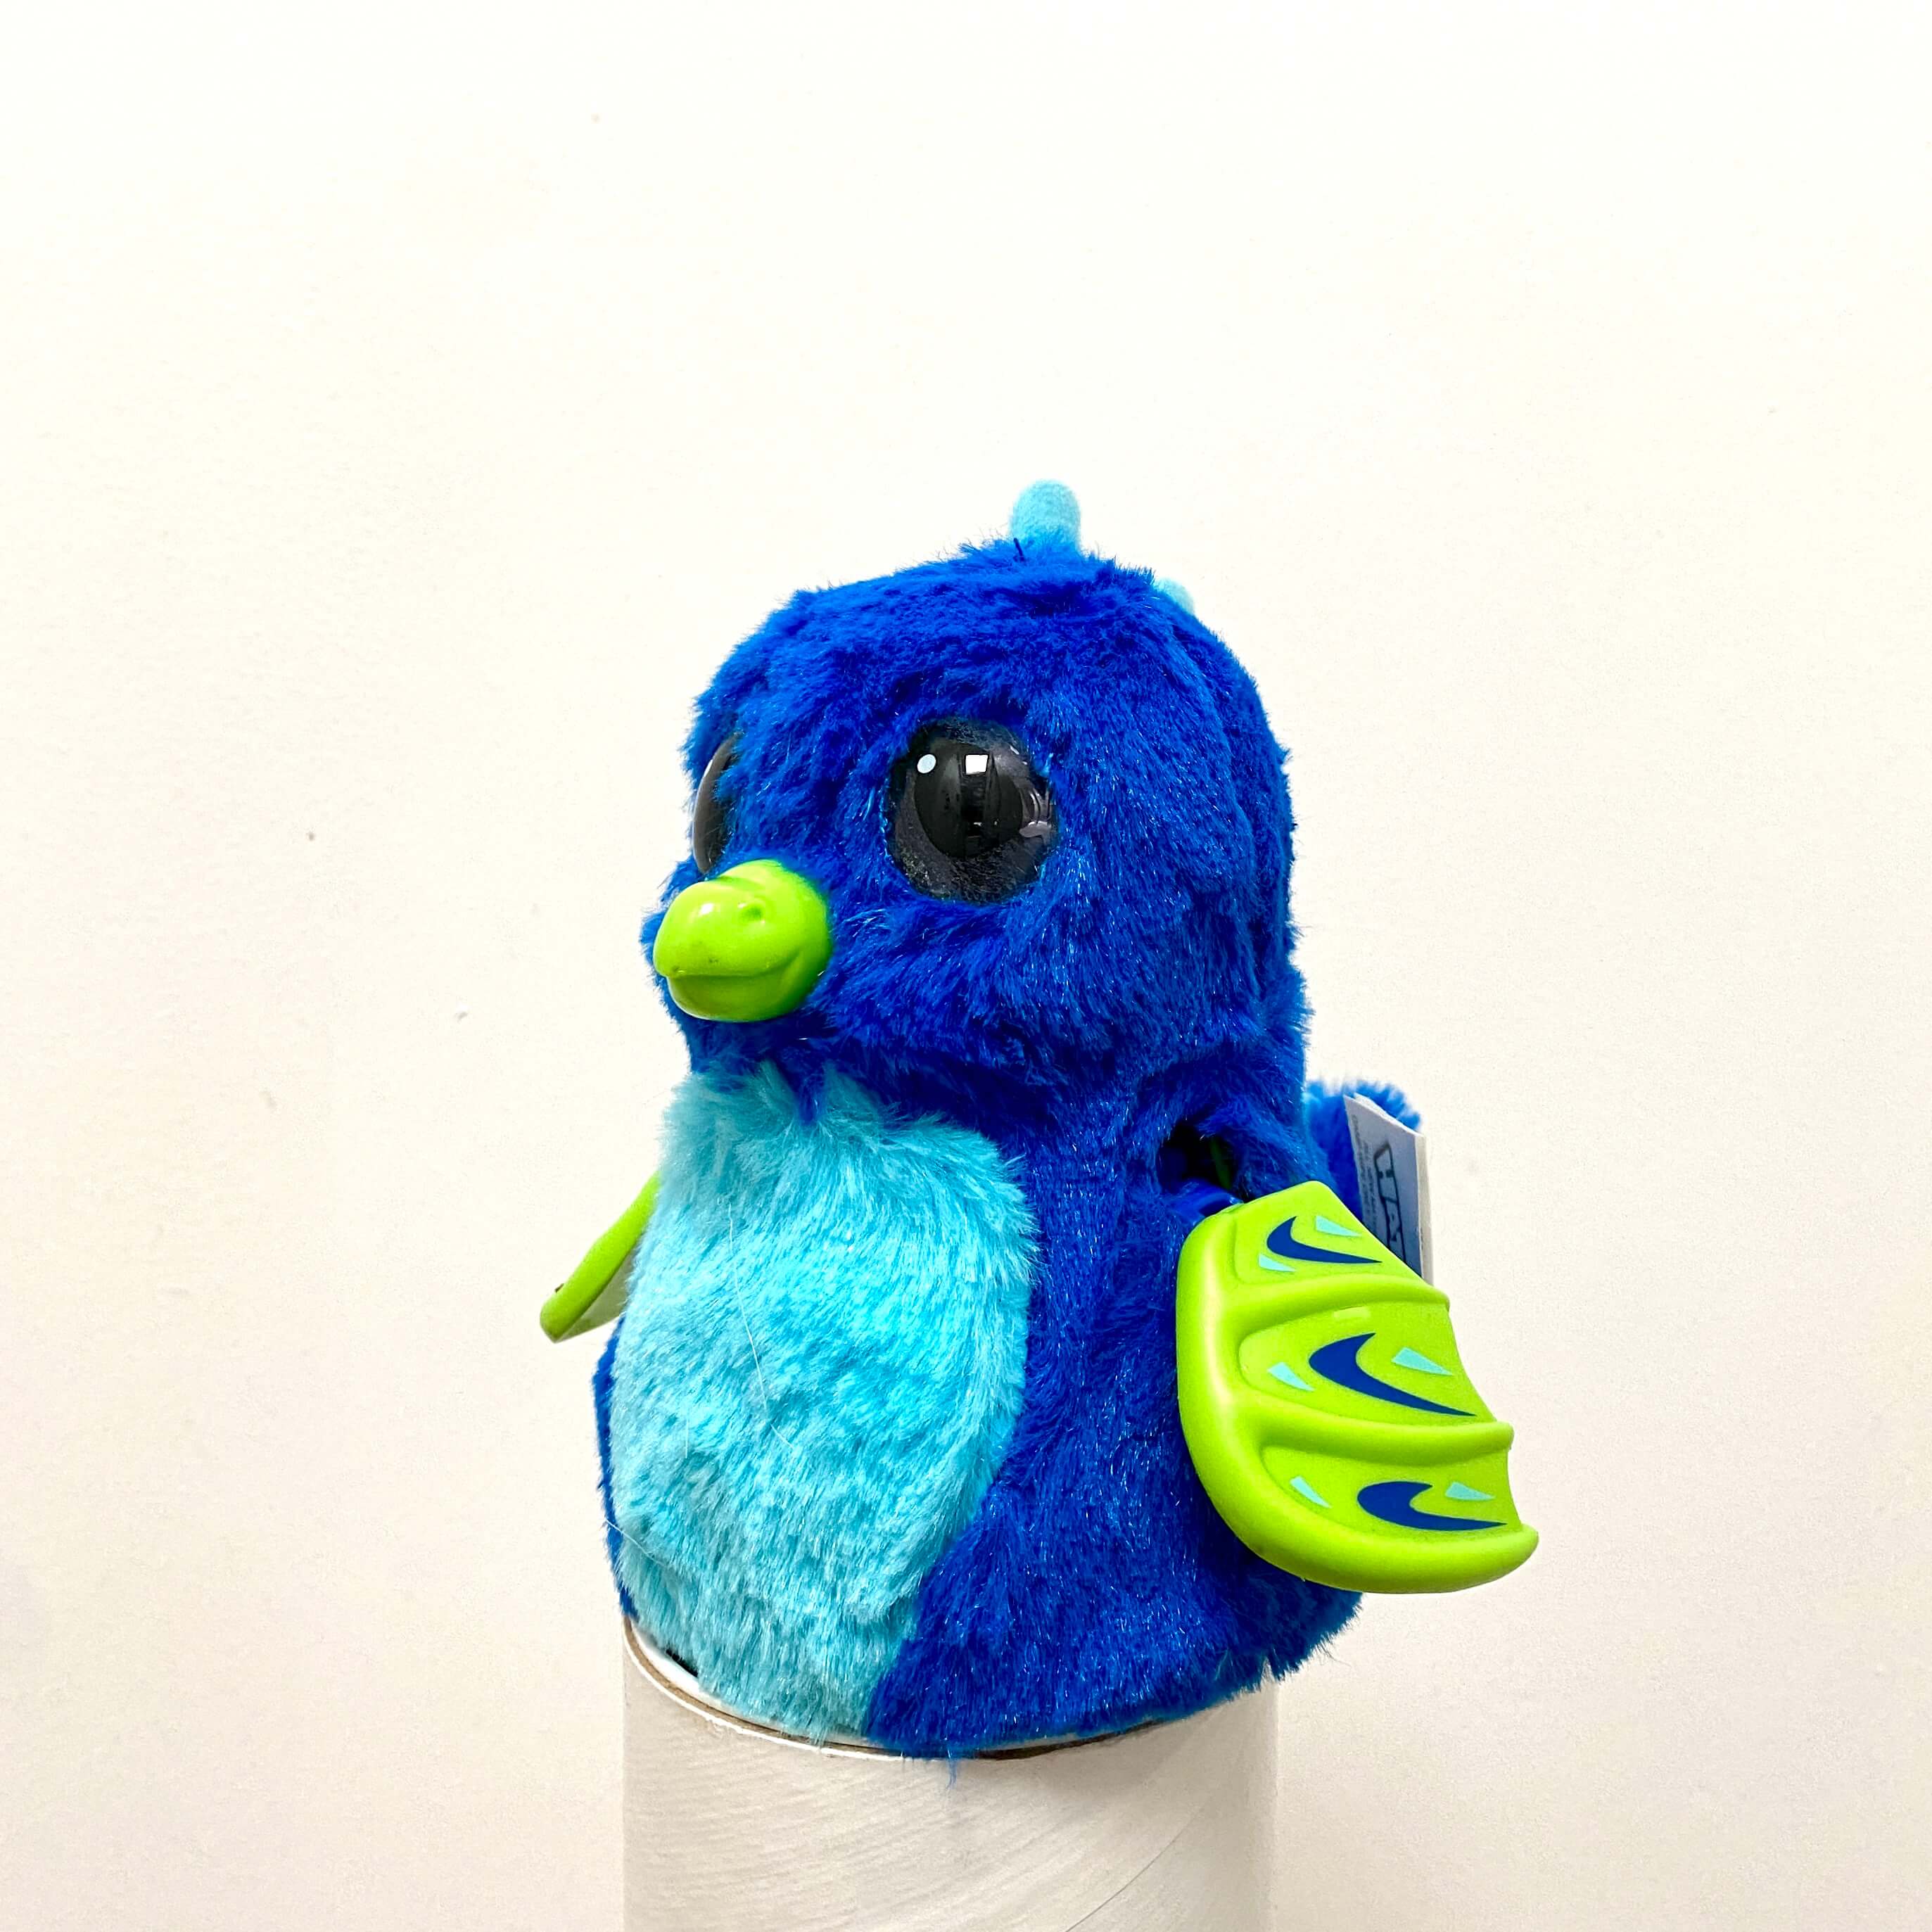 Blue bird Toy